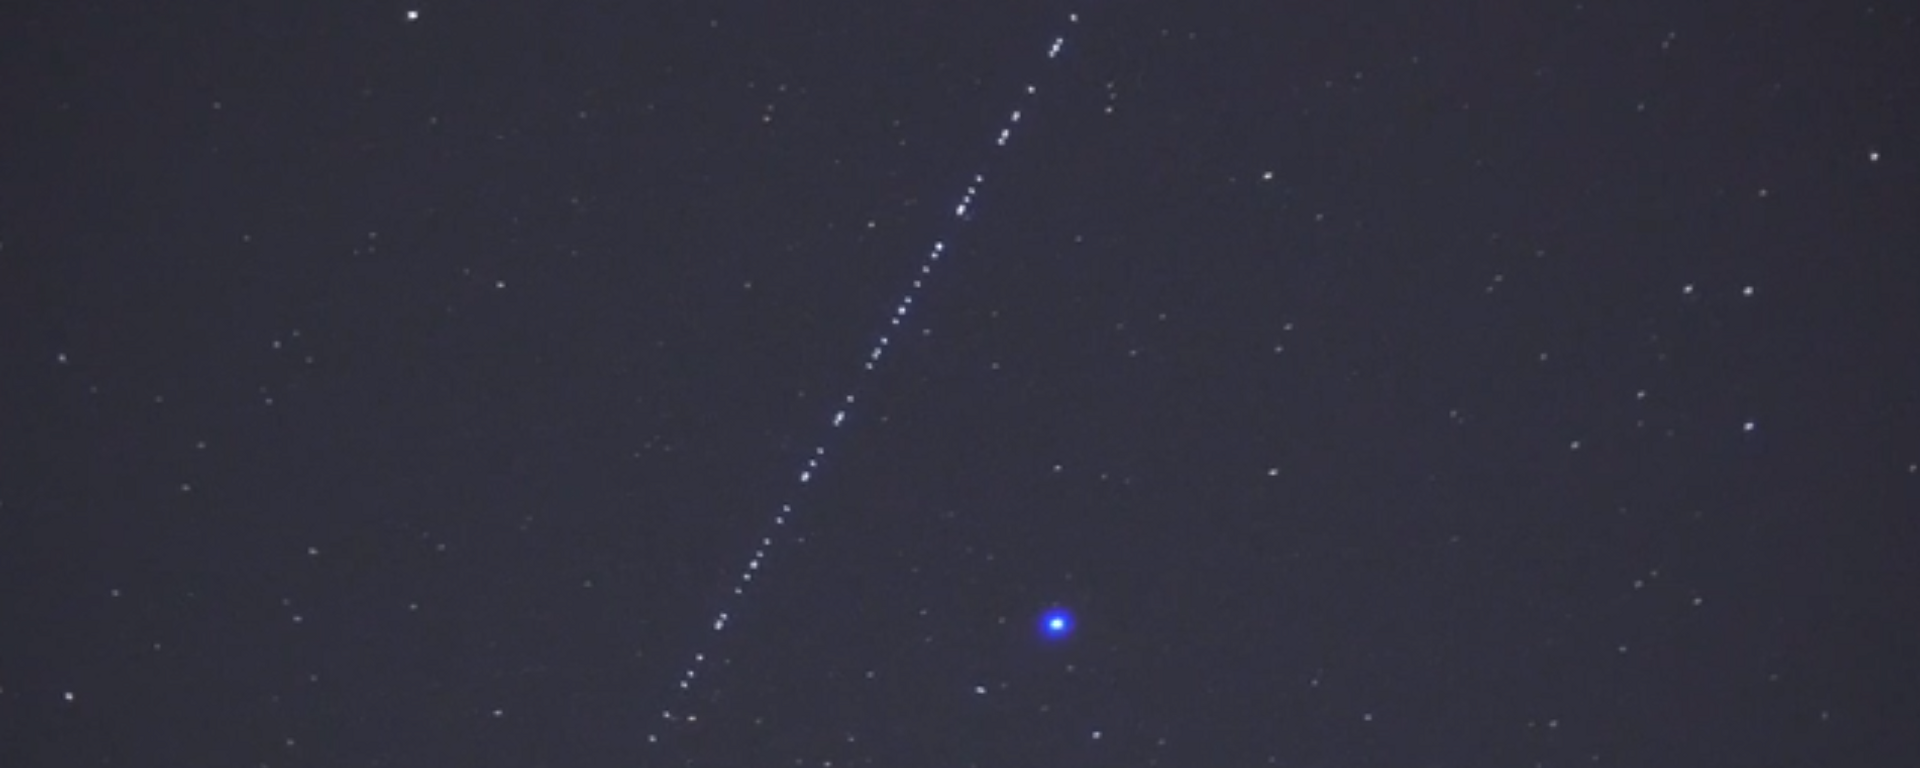 Un 'tren' iluminado de satélites Starlink cruza el cielo nocturno suizo - Sputnik Mundo, 1920, 26.03.2021